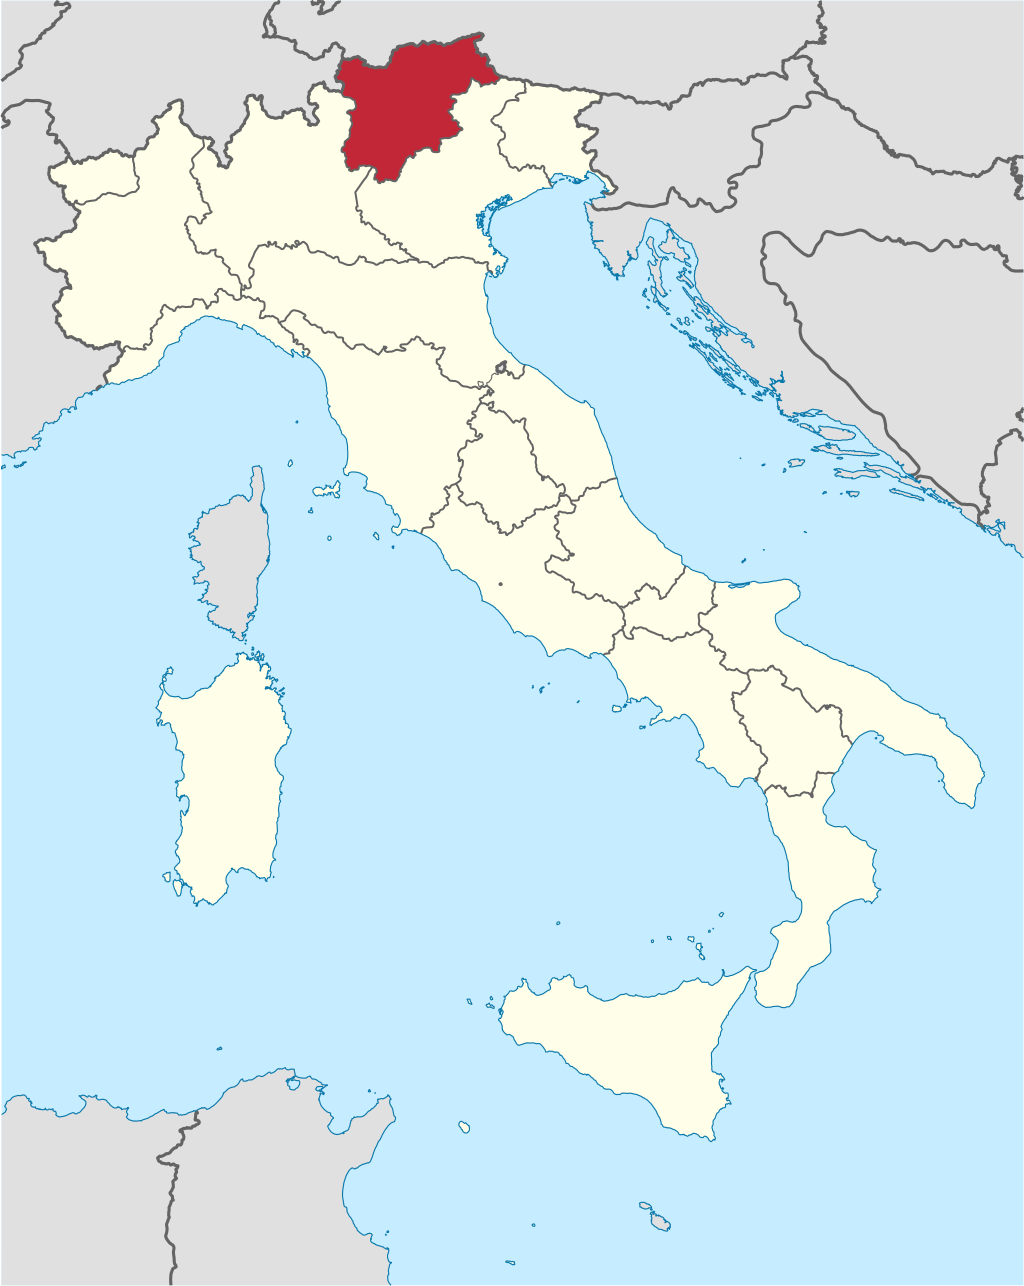 Aluminium Plant Urbex location or around the region Trentino Alto Adige (Trentino), Italy